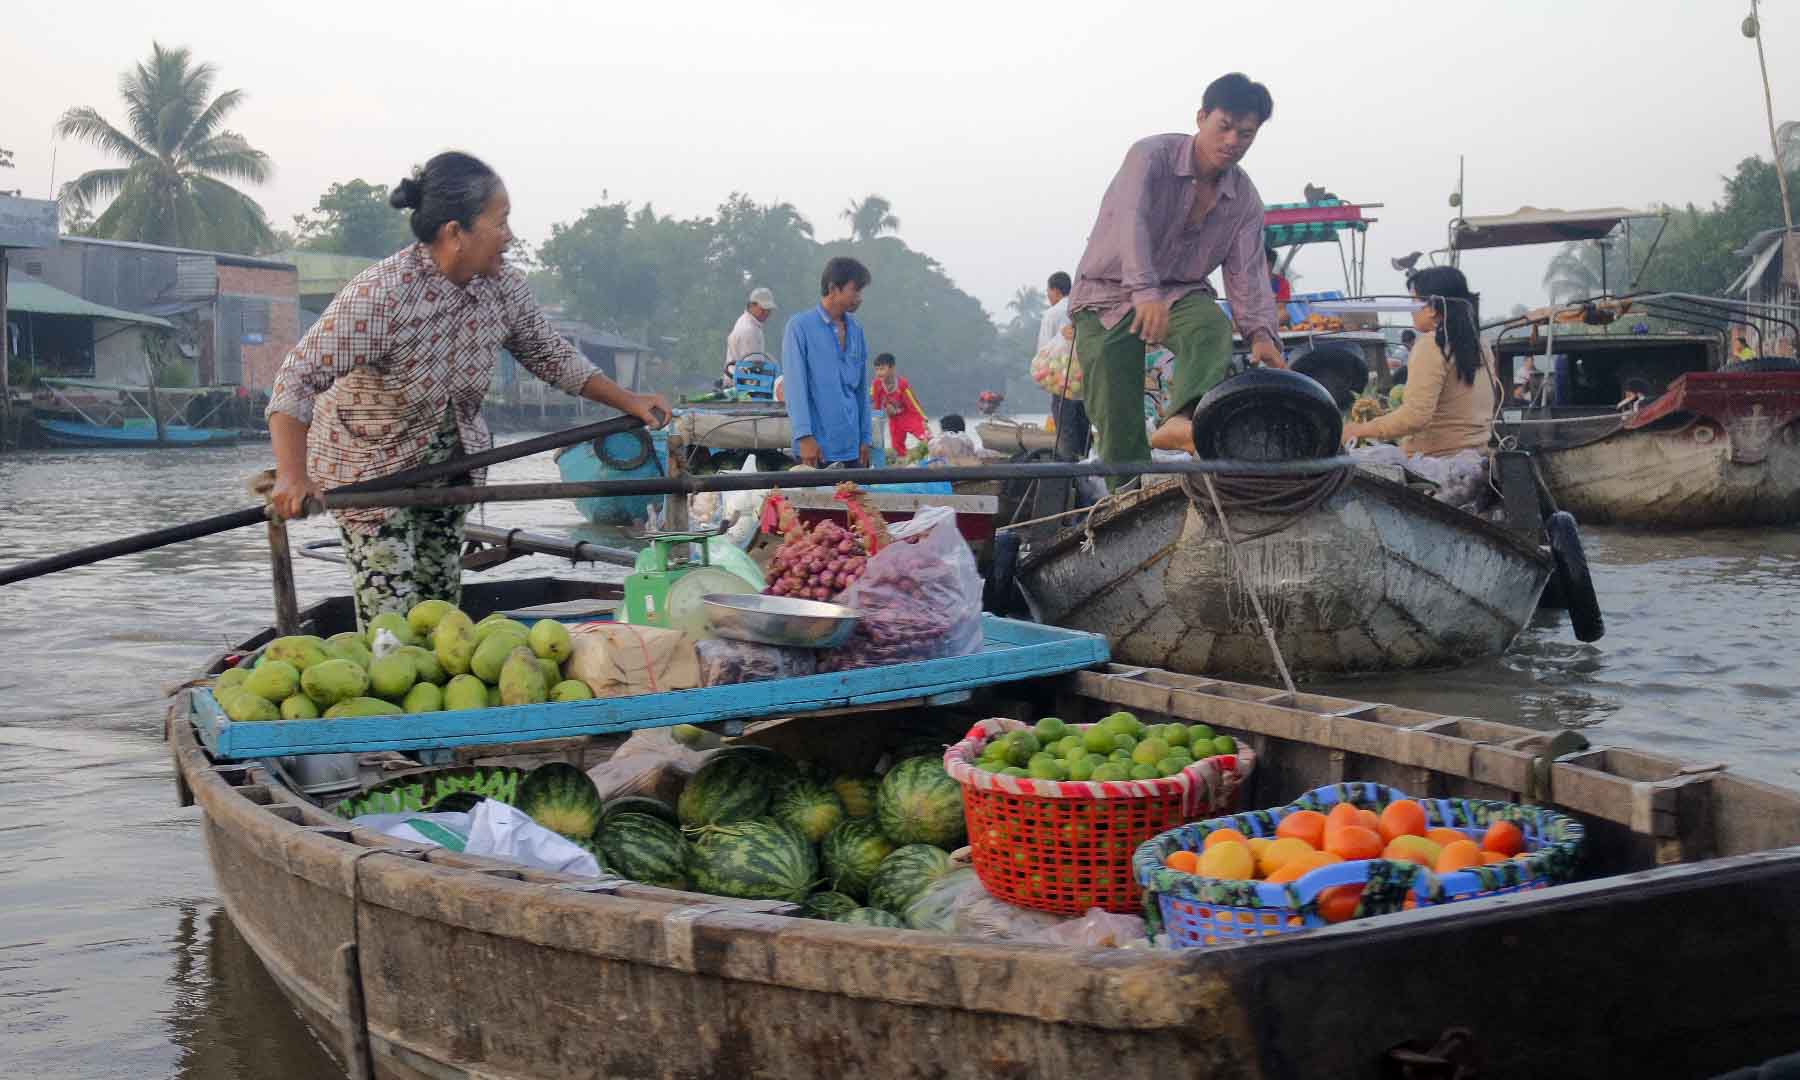 Phong Dien market just after sunrise